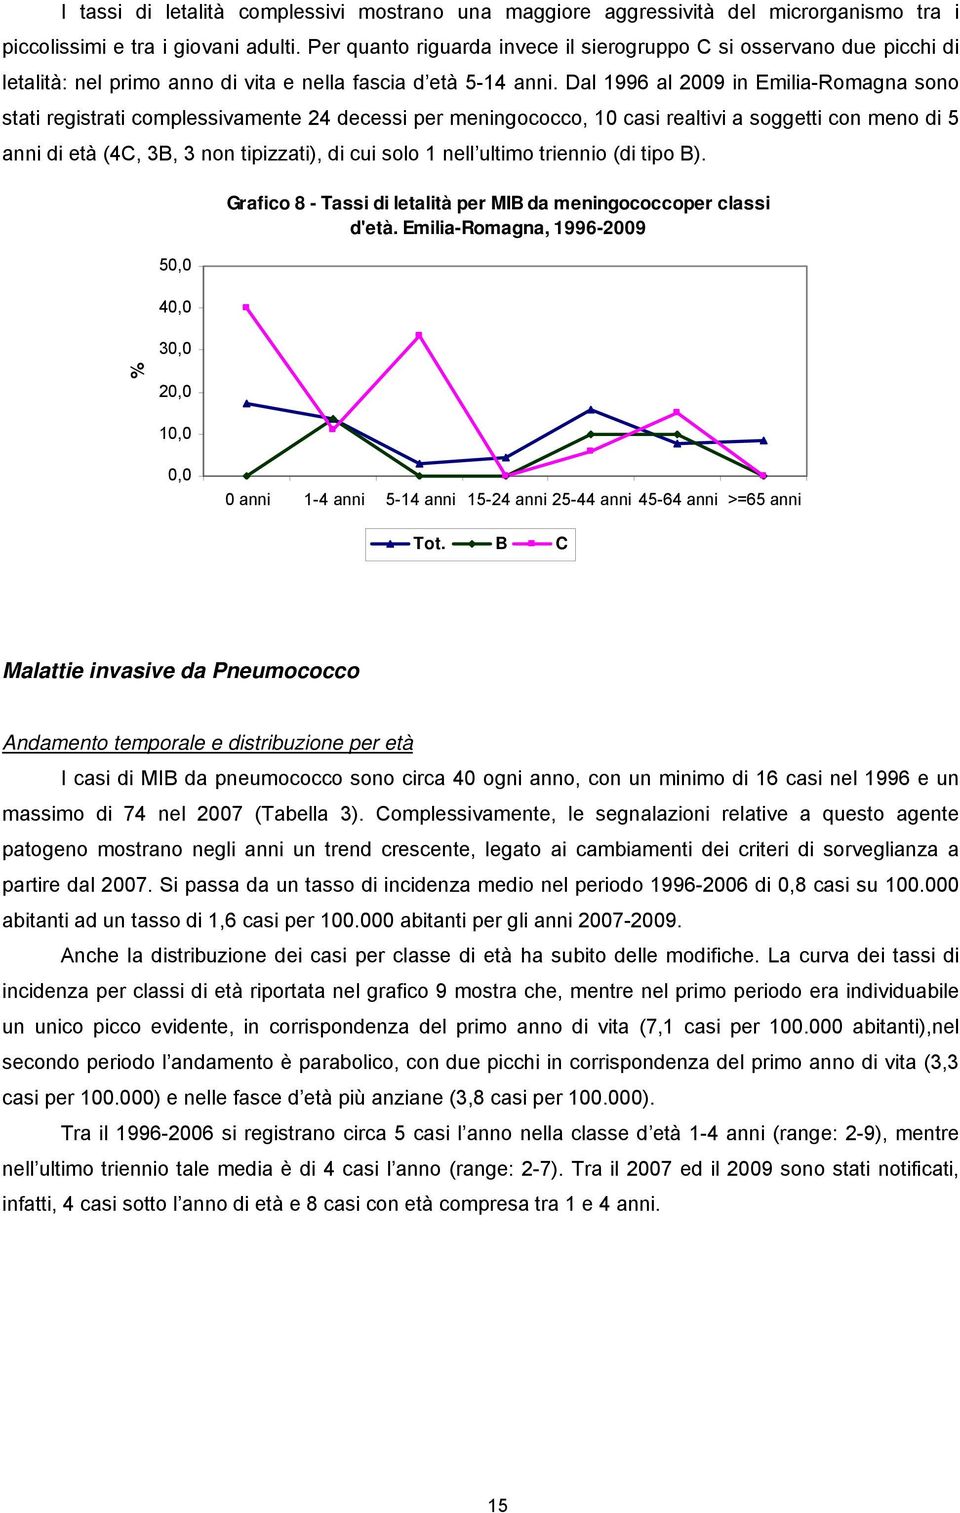 Dal 1996 al 2009 in Emilia-Romagna sono stati registrati complessivamente 24 decessi per meningococco, 10 casi realtivi a soggetti con meno di 5 di età (4C, 3B, 3 non tipizzati), di cui solo 1 nell